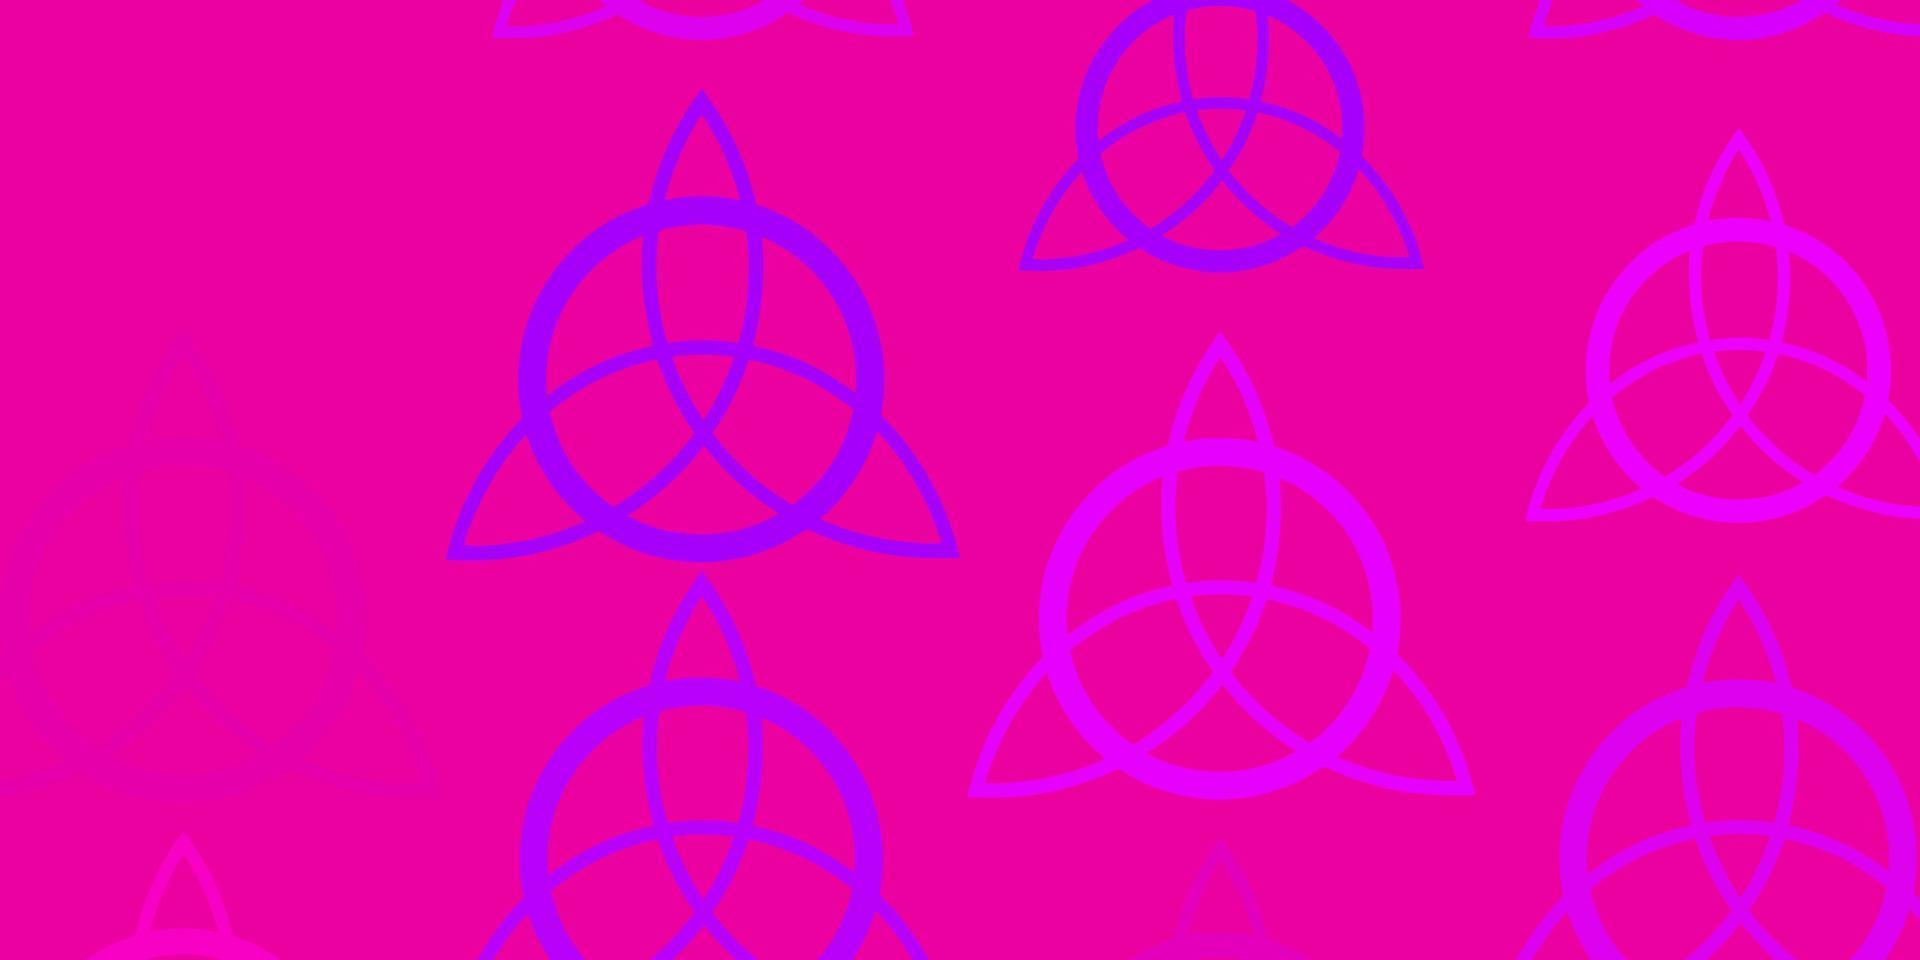 patrón de vector rosa claro con elementos mágicos.